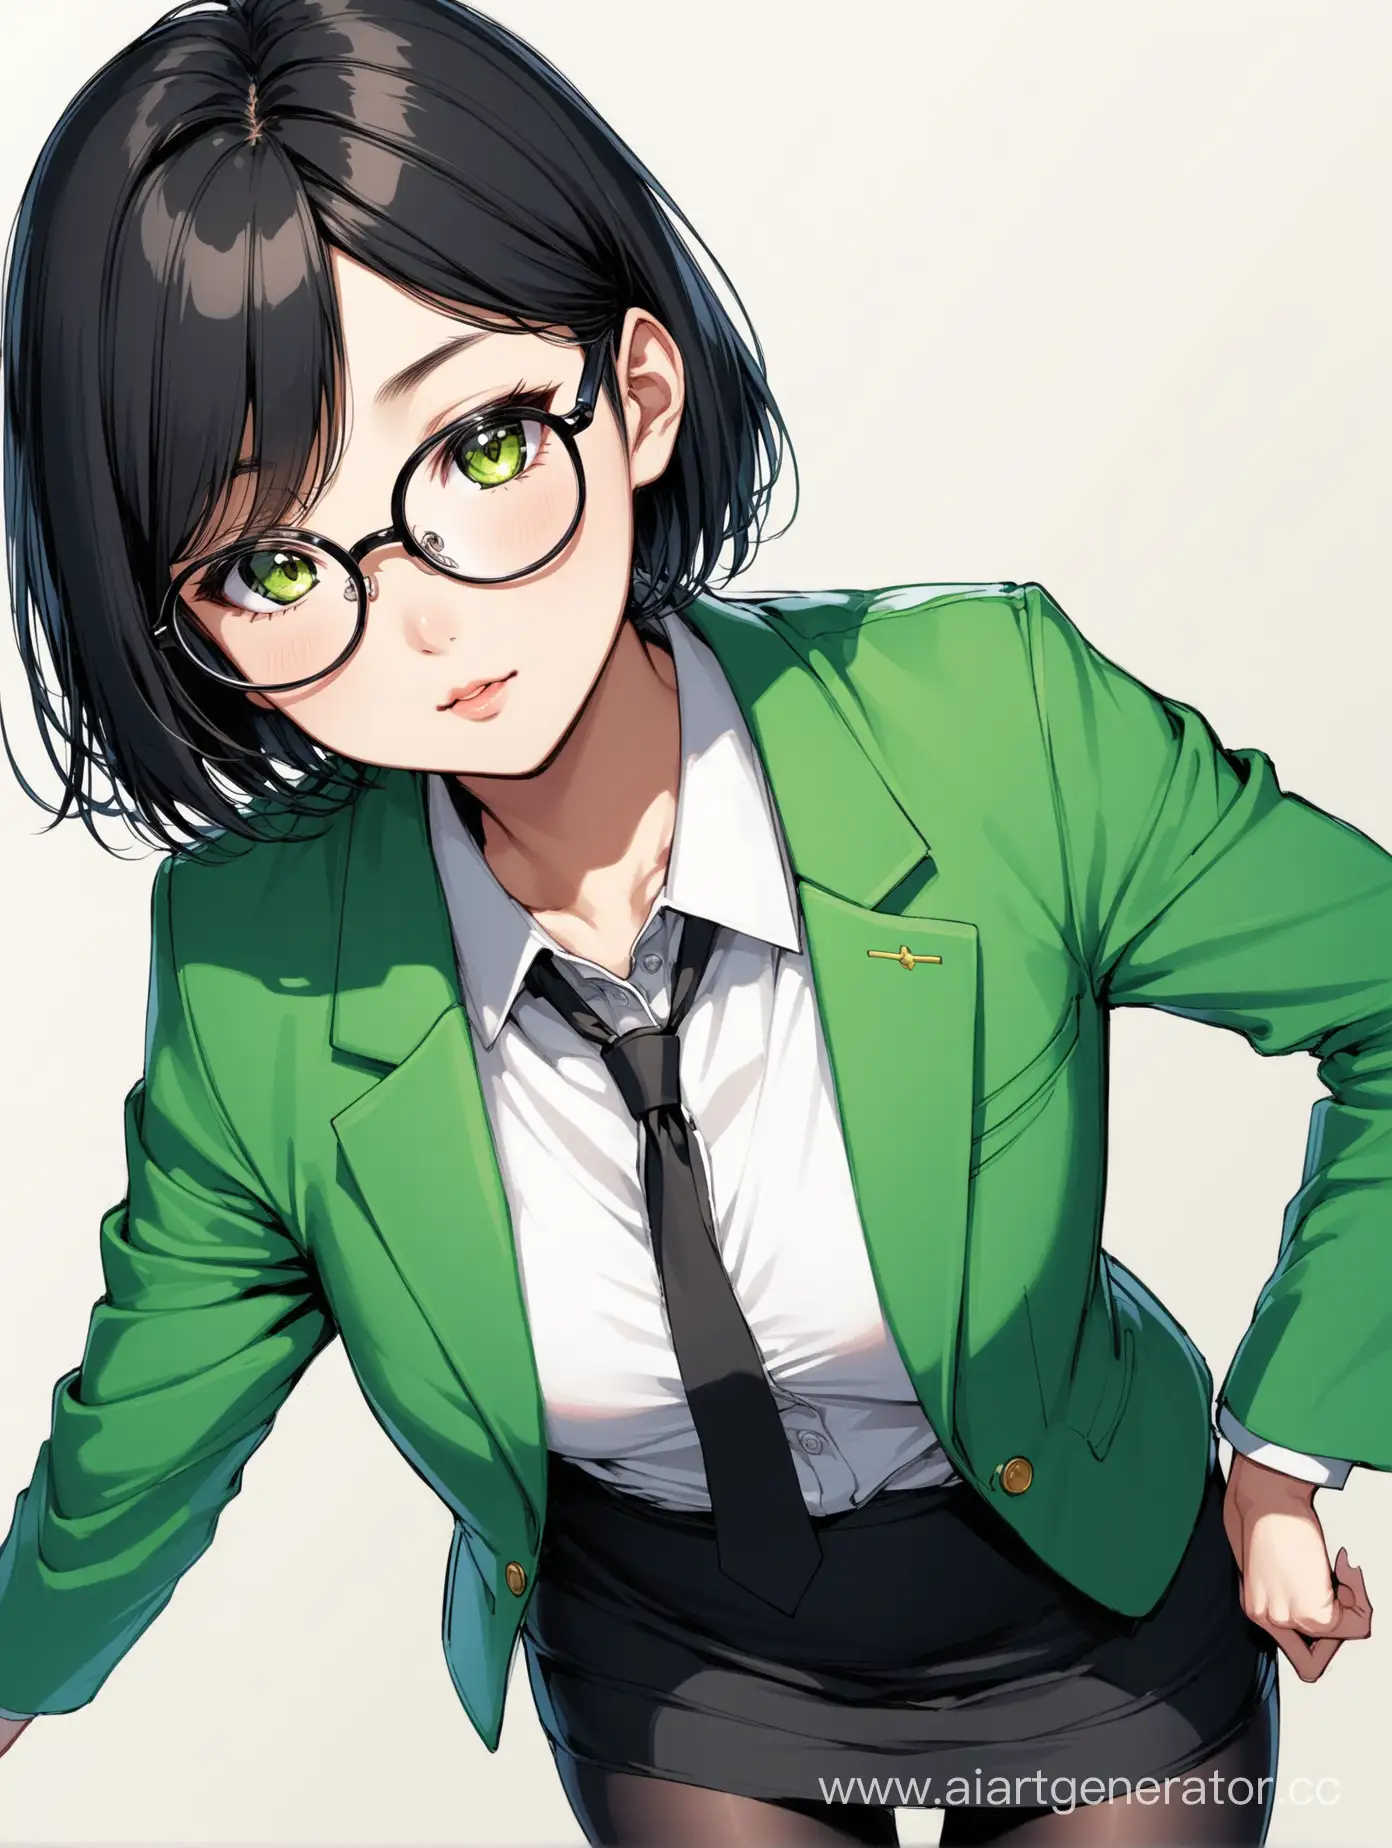 Asian Female character, teenager, skinny body, short black hair, green office blazer, black office skirt, black stockings, glasses